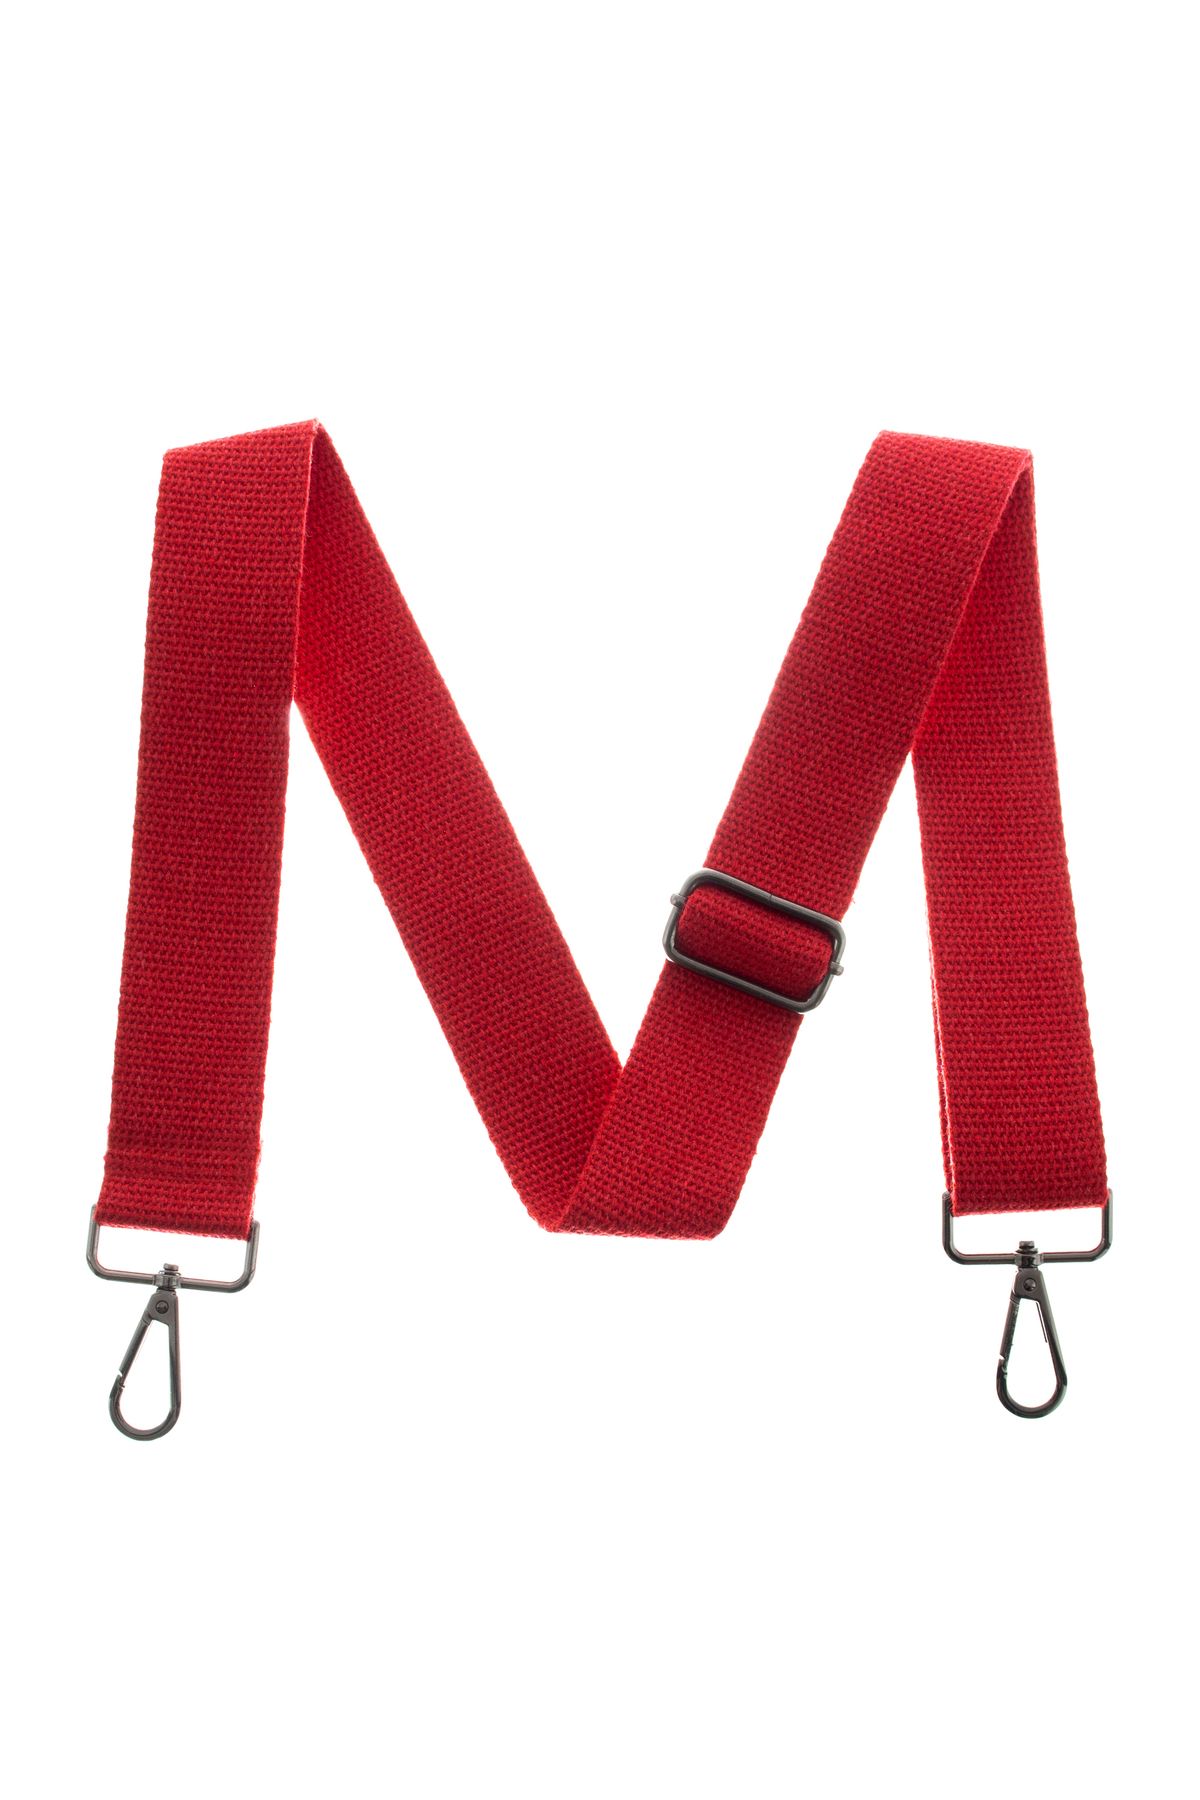 miawiki Kırmızı Renk 125 Cm Omuz Askısı, Uzunluğu Ayarlanabilir, Siyah Renk Metal Aksesuarlı